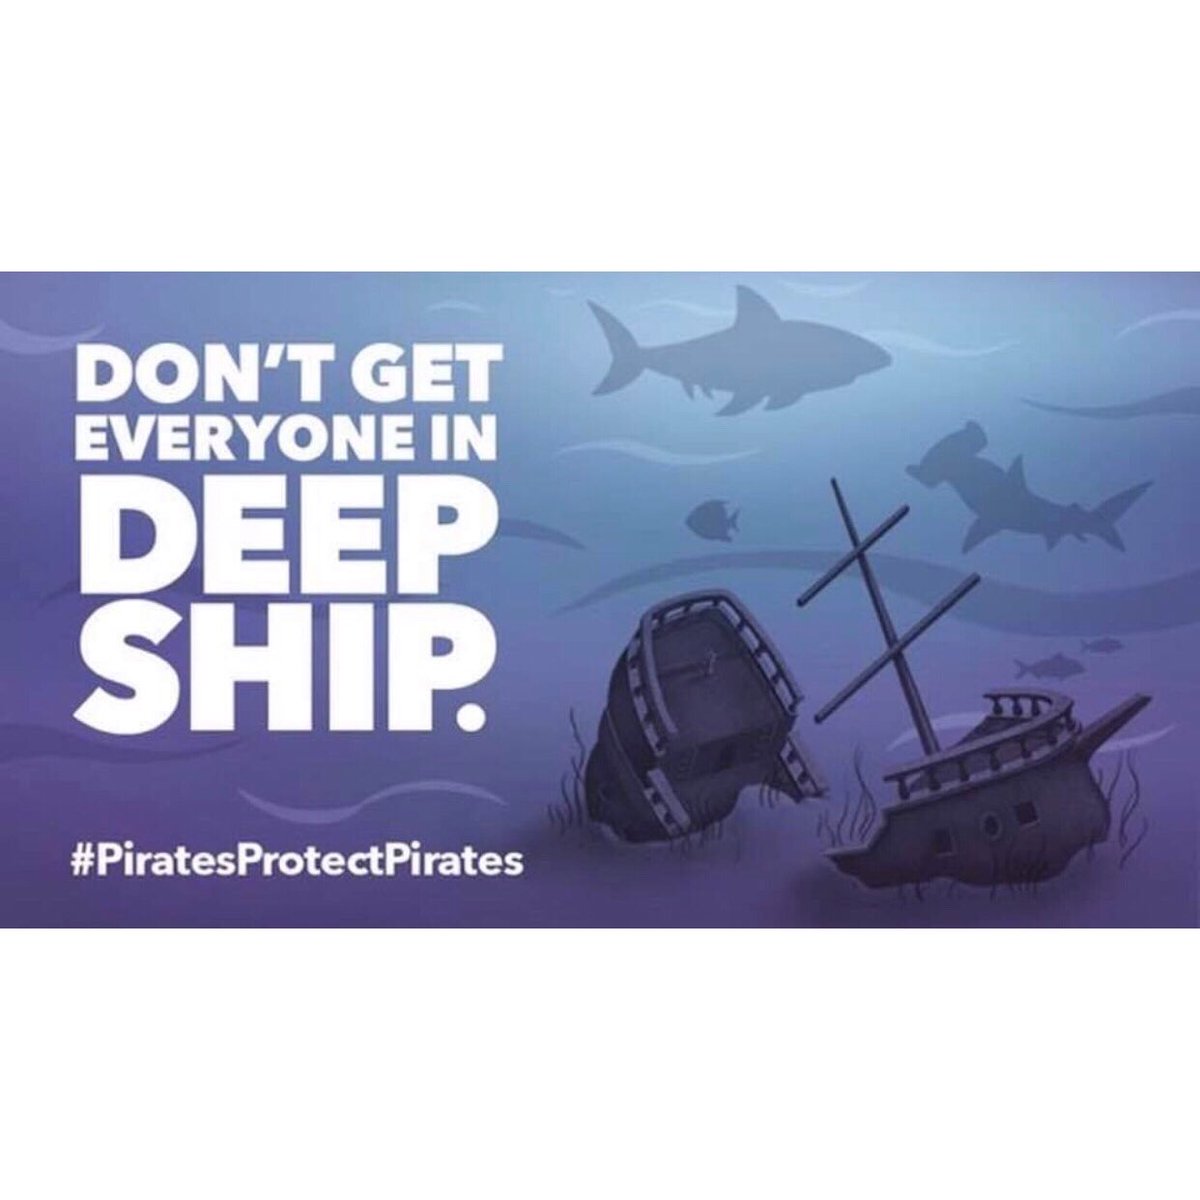 #MeetOurStaff: CLCE staff #ARRRGH encouraging you to “not get everyone in deep ship“ on this #PaintitPurpleFriday! ⁣
⁣
#PiratesMaskUp #ECUmaskup #piratesprotectpirates #ECU21 #ECU22 #ECU23 #ECU24